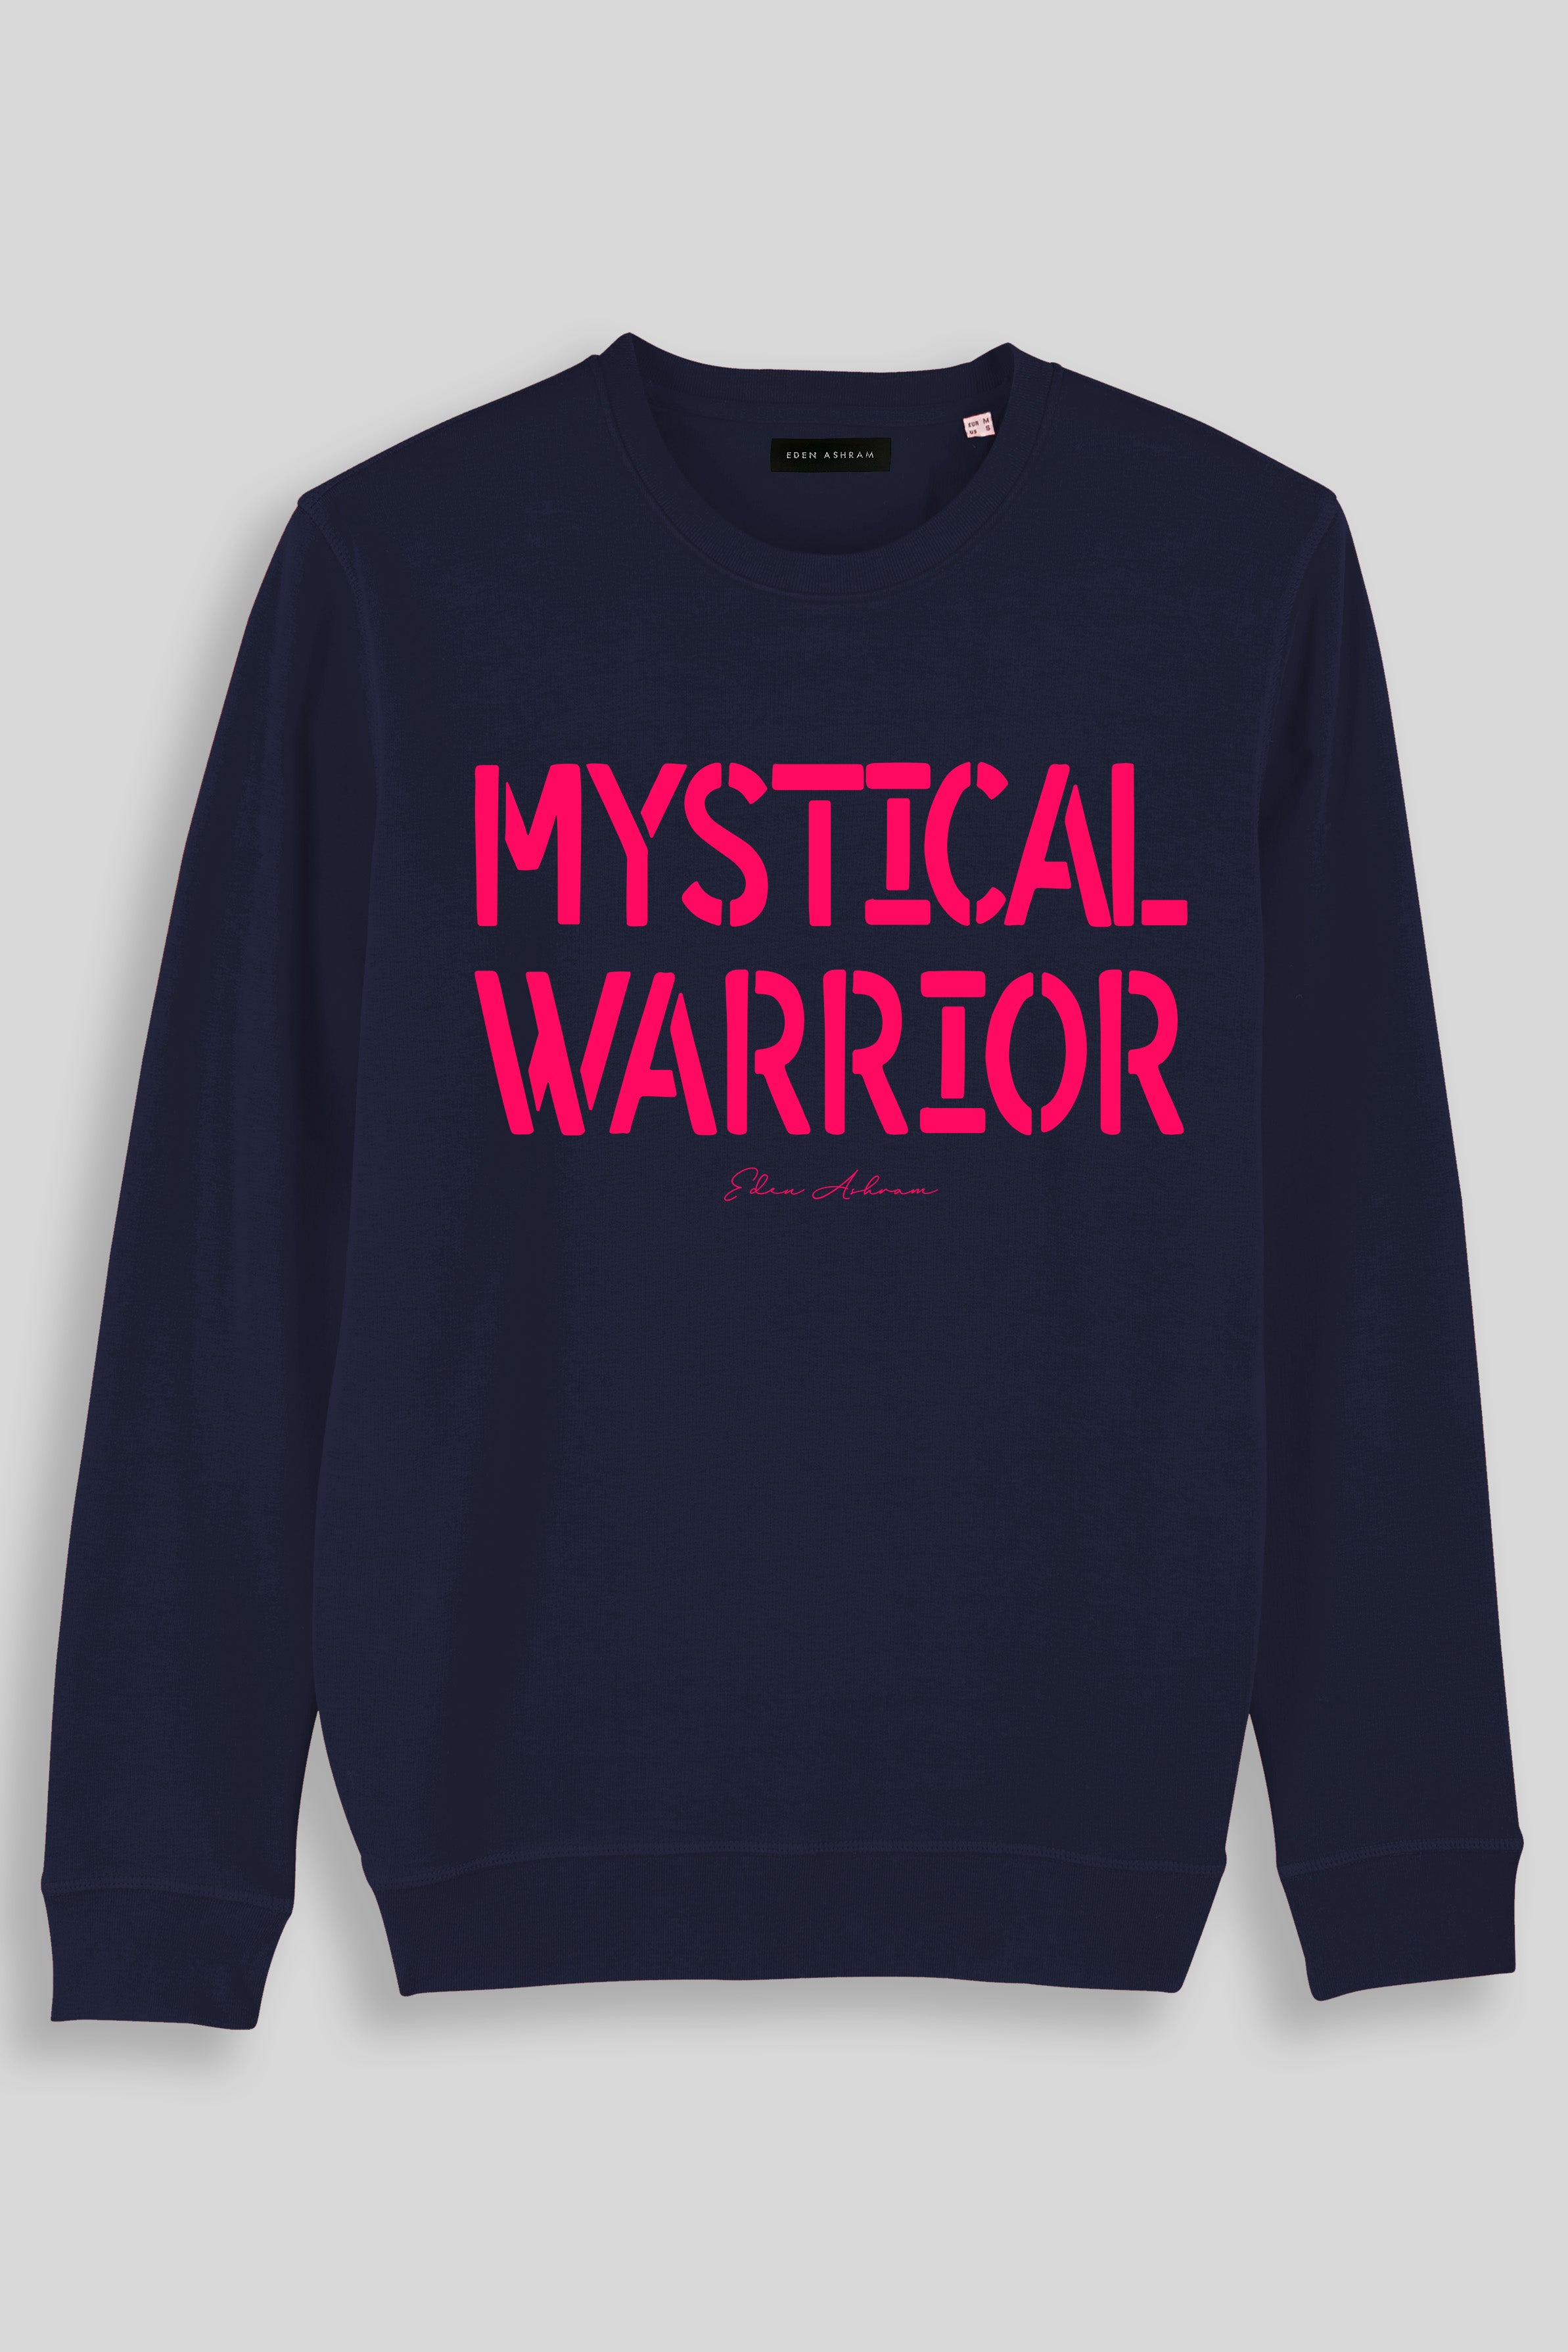 Eden Ashram Mystical Warrior Premium Crew Neck Sweatshirt Navy